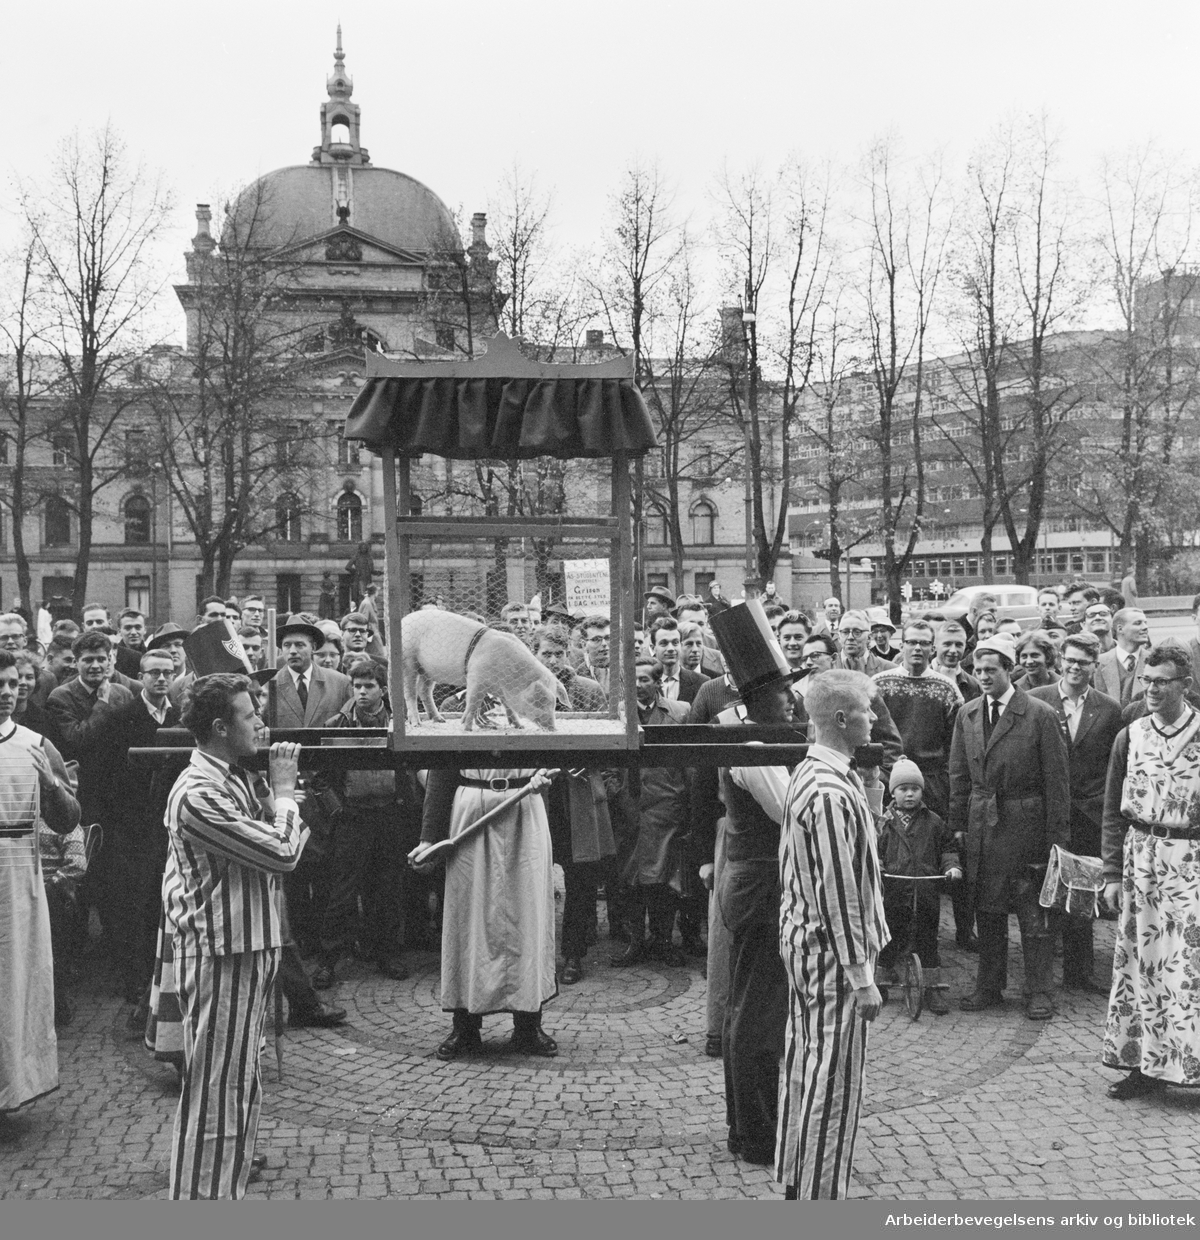 Studenter-Uka i Oslo 1960. Opptog fra Festningsplassen til Universitetsplassen. Studenter fra Landbrukshøyskolen på Ås har med seg en gris (Hans Majestet Grisen) til Oslo. 15. Oktober 1960.